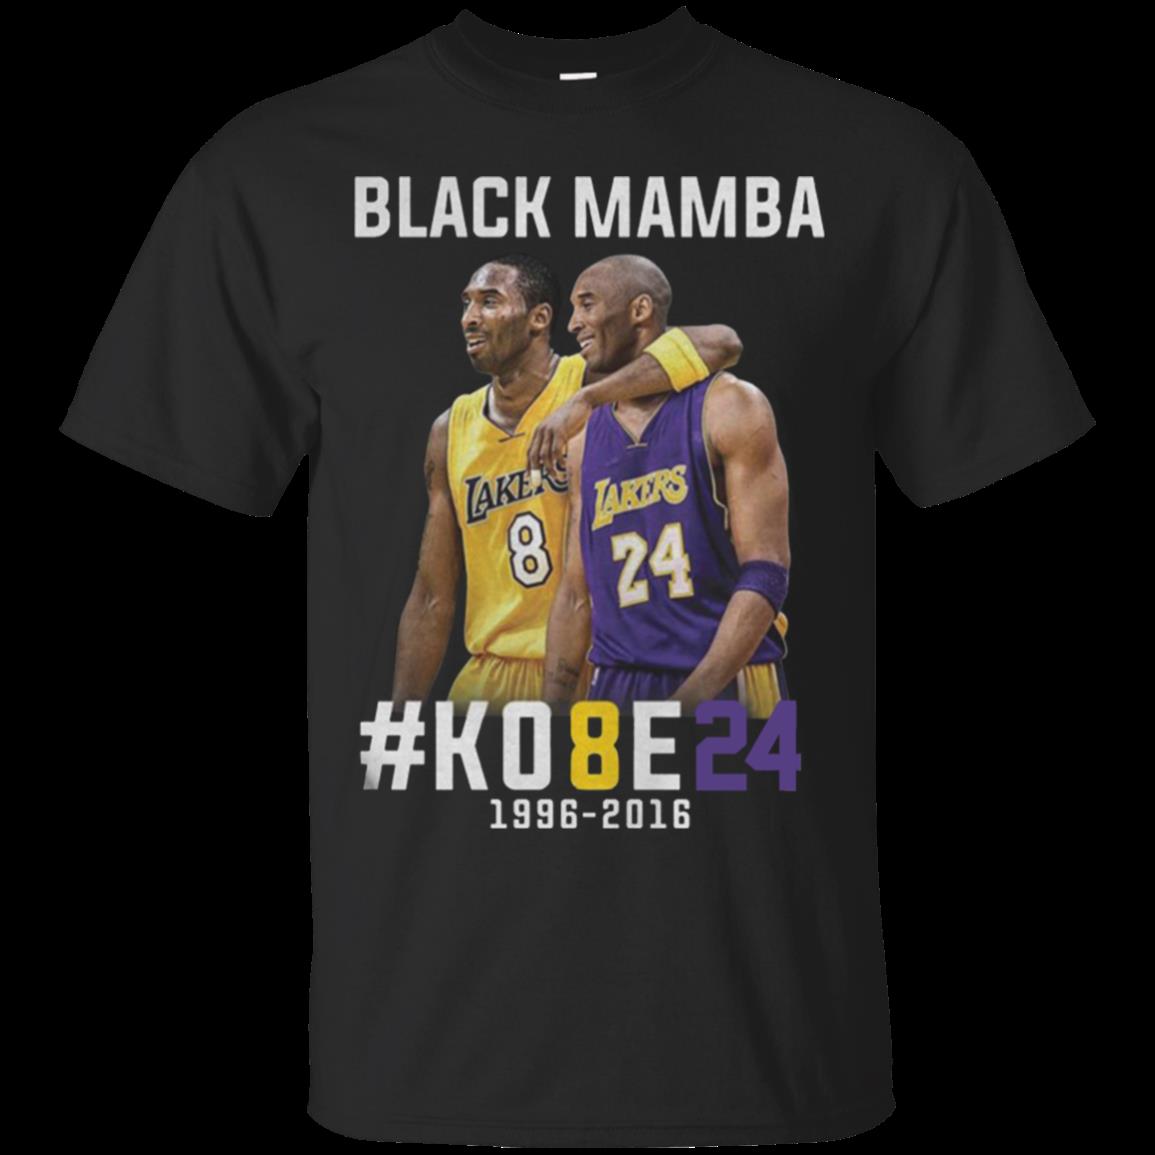 The Black Mamba Shirt, Kobe Shirt, Bryant Shirt, Basketball Shirt